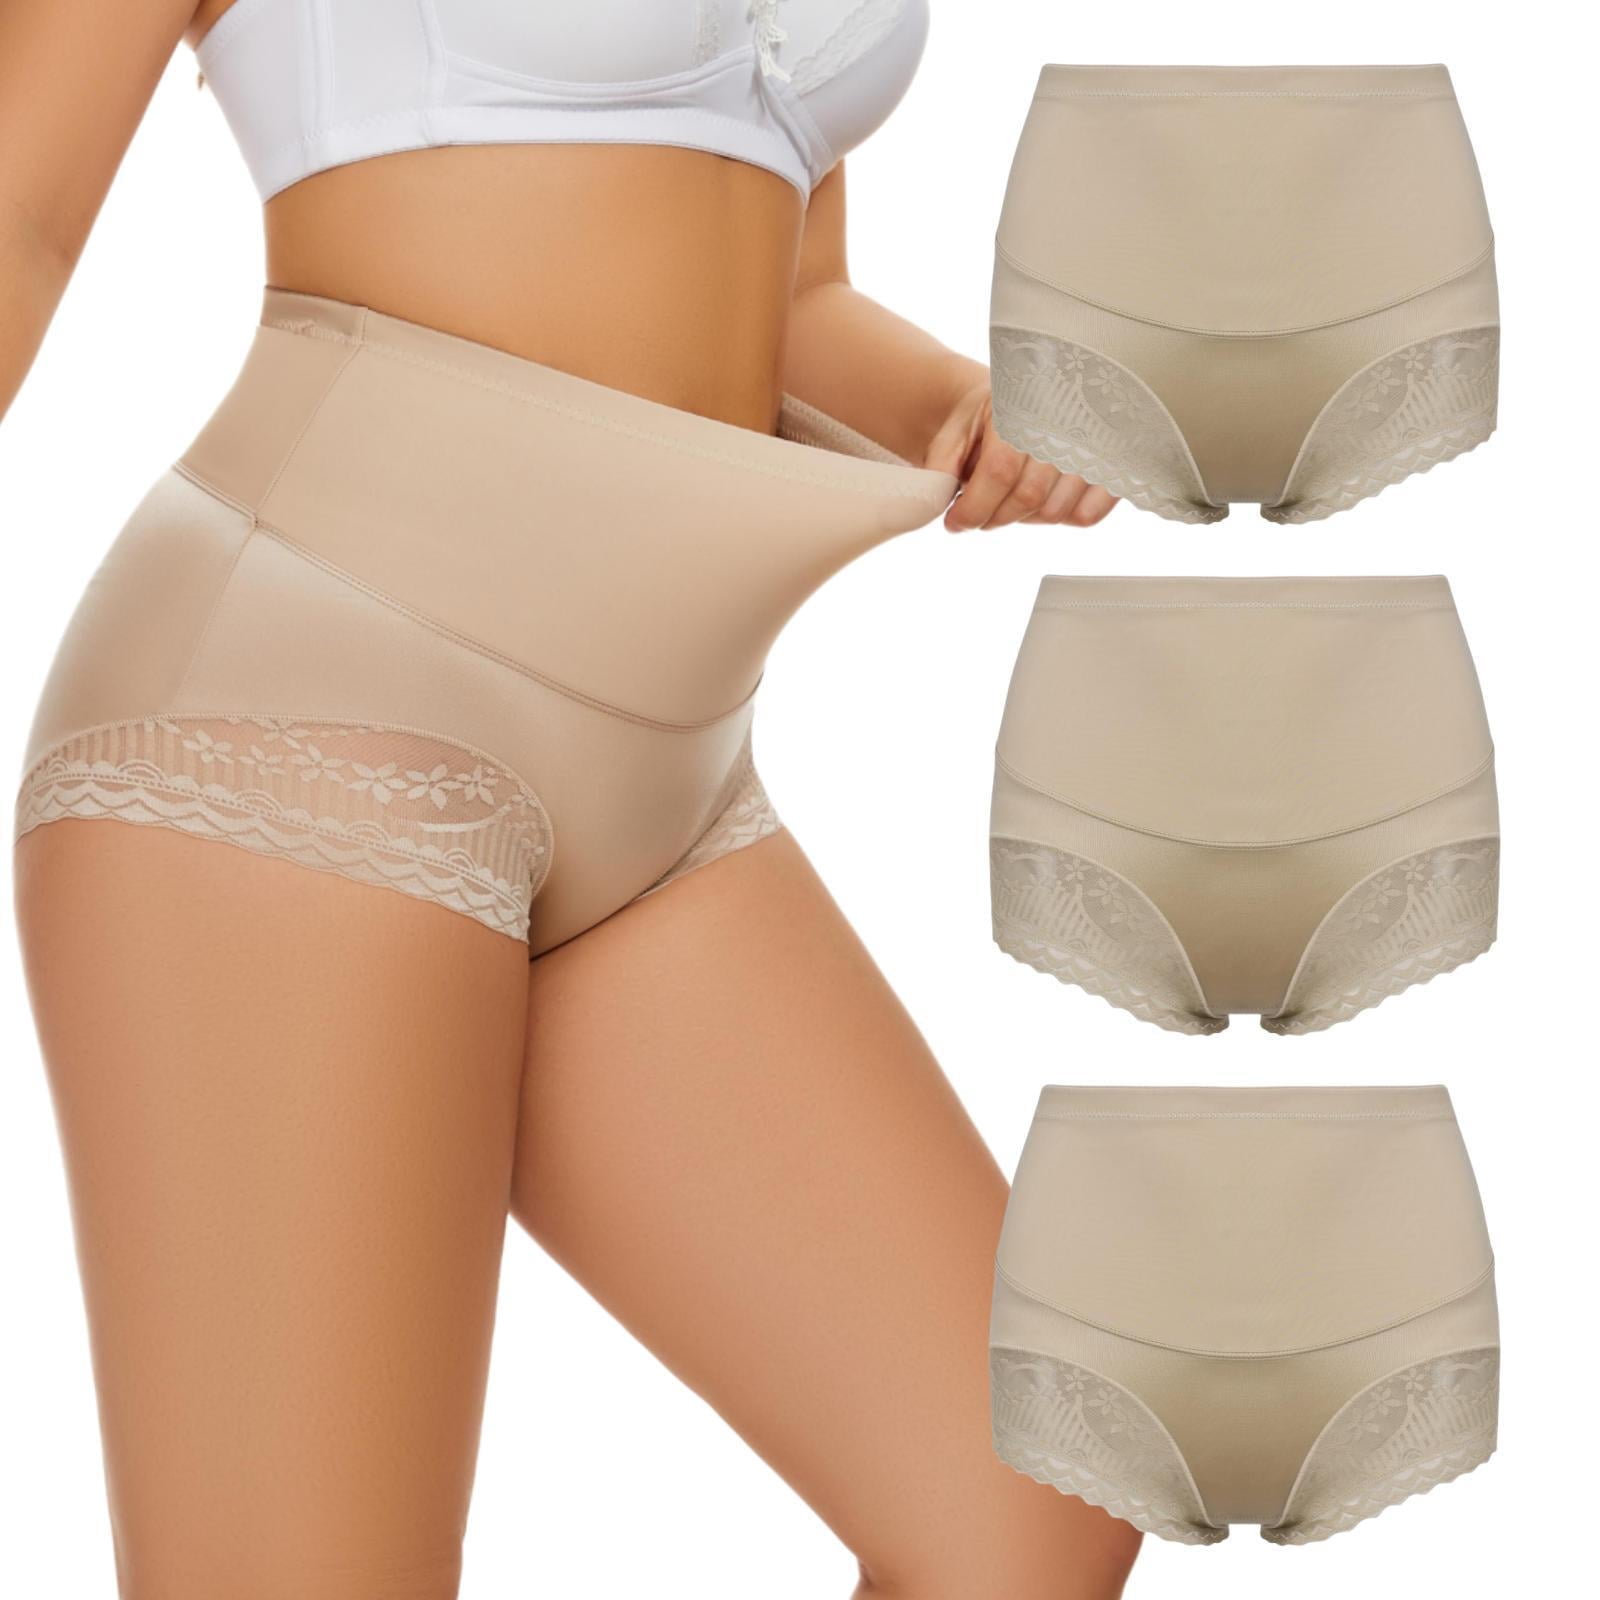 3 Pcs Women's Cotton Underwear High Waisted Stretch Briefs Soft